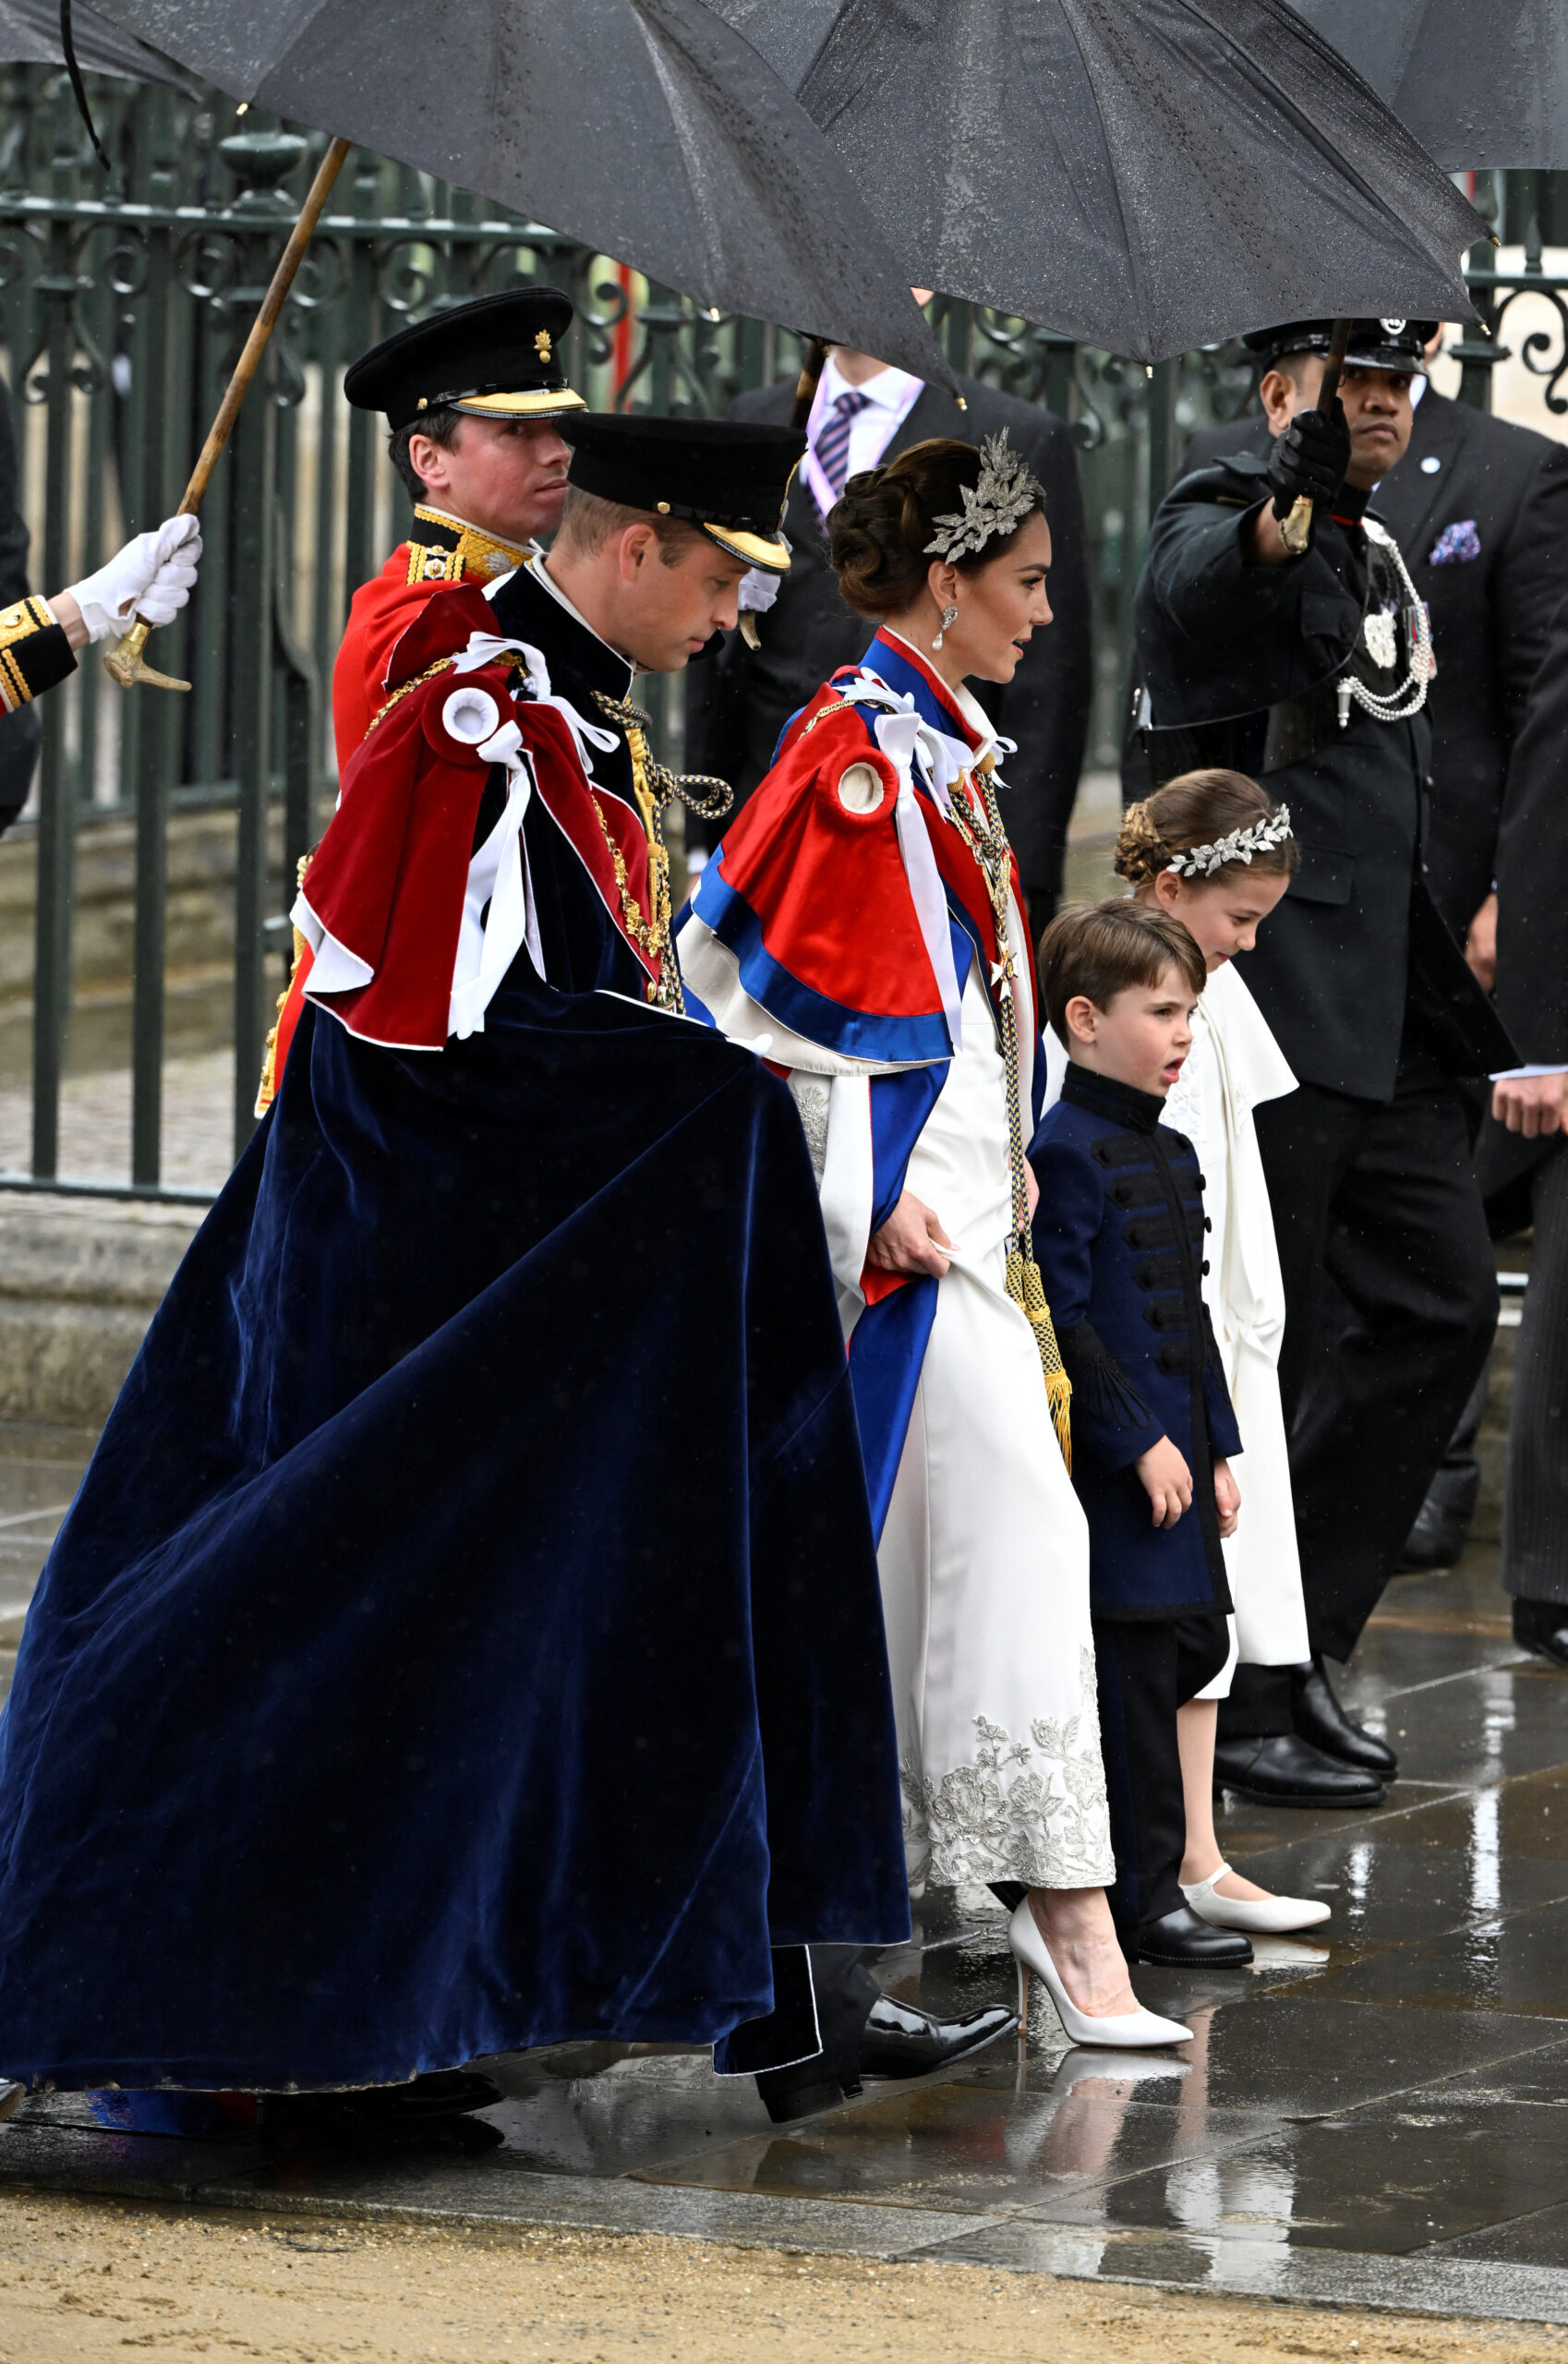 принц вельський вільям джордж луї принцеса кетрін шарлотта кейт міддлтон коронація образи вбрання прикраси тіари символи